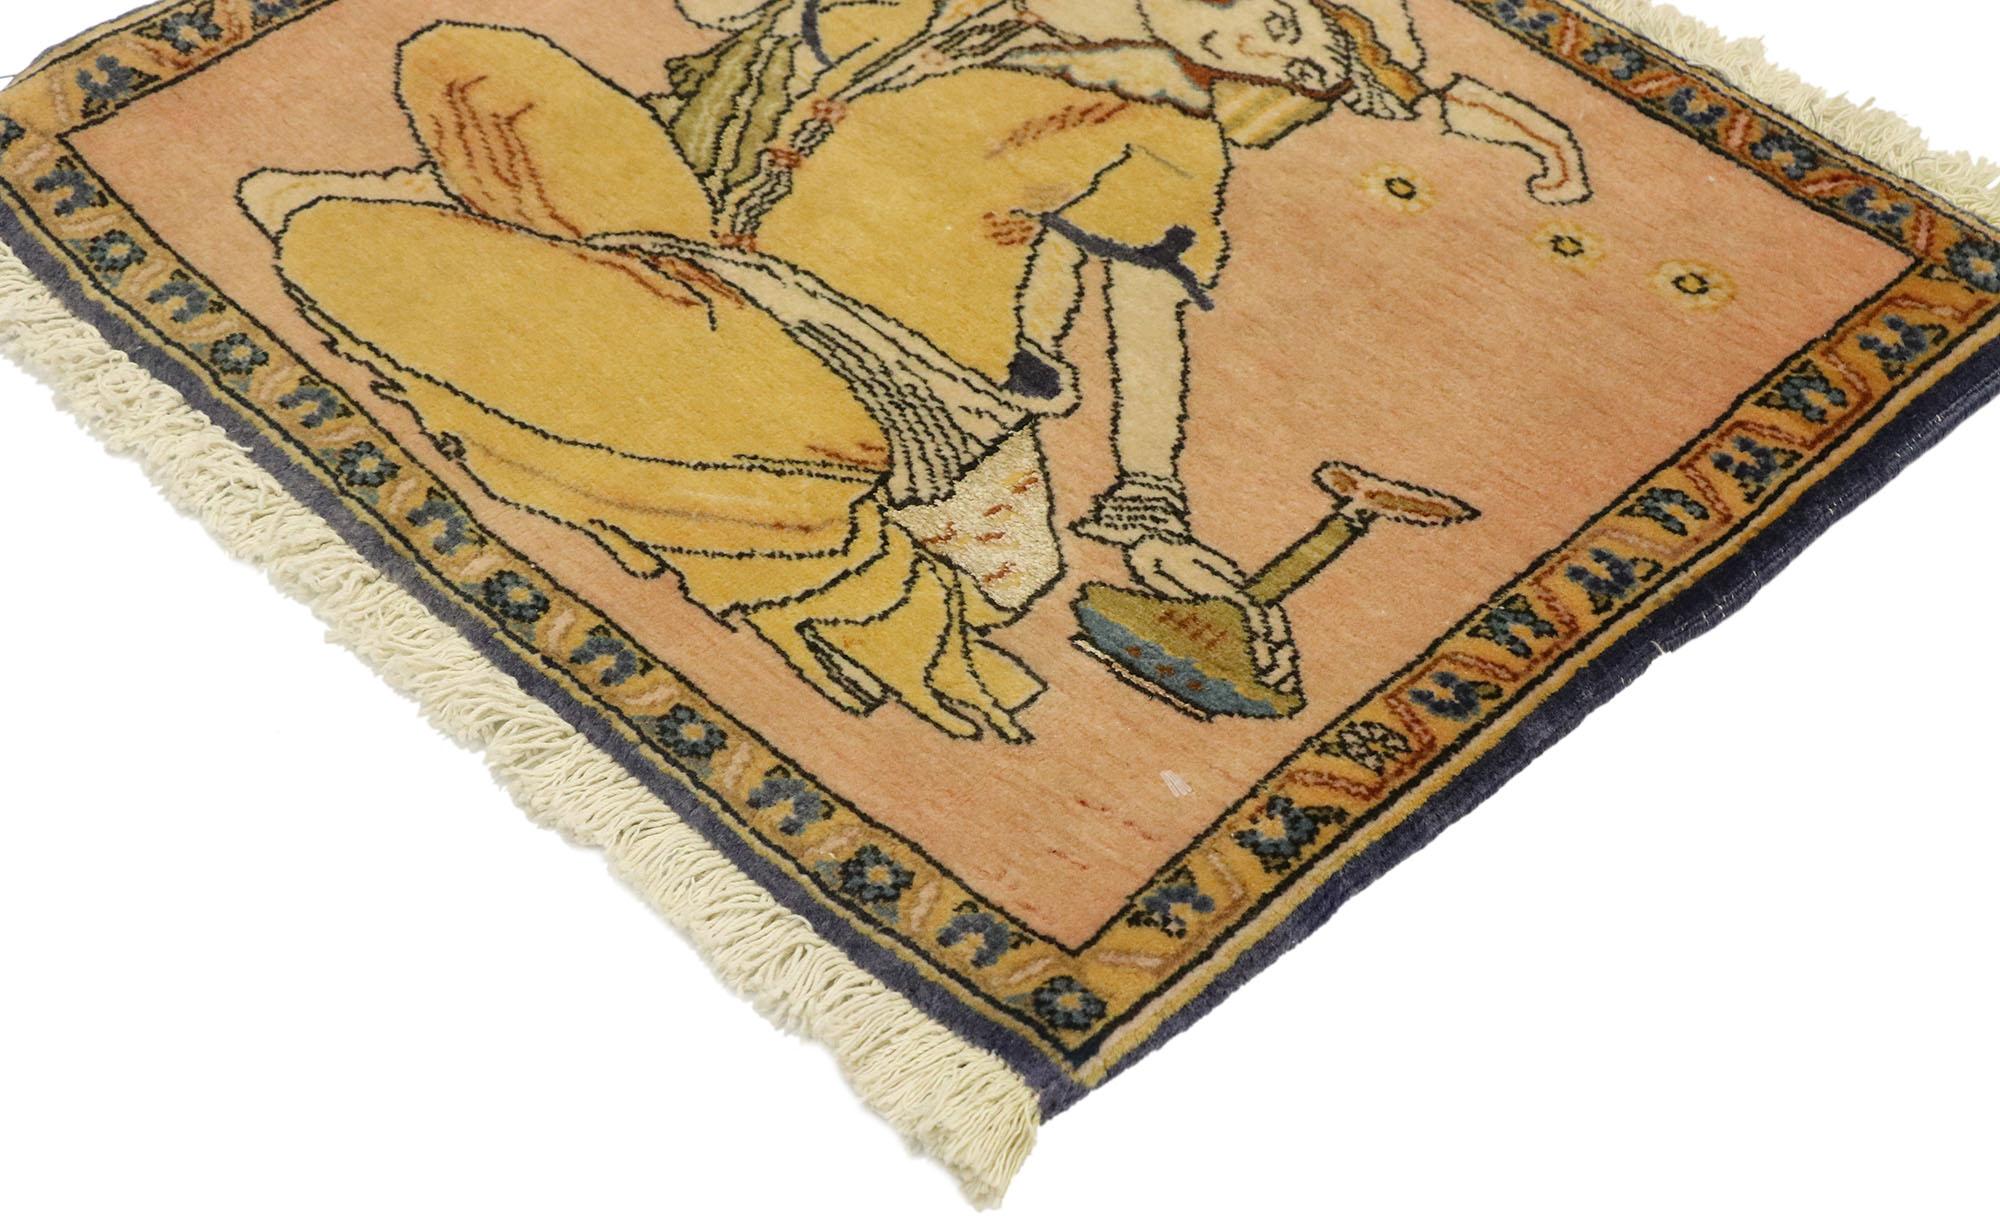 76199, tapis vintage Persan Khamseh Pictorial avec scène de Derviche, tenture murale Persane. La Perse antique est la véritable origine de la viticulture et de la consommation de vin, comme le montre ce tapis pictural Khamseh en laine noué à la